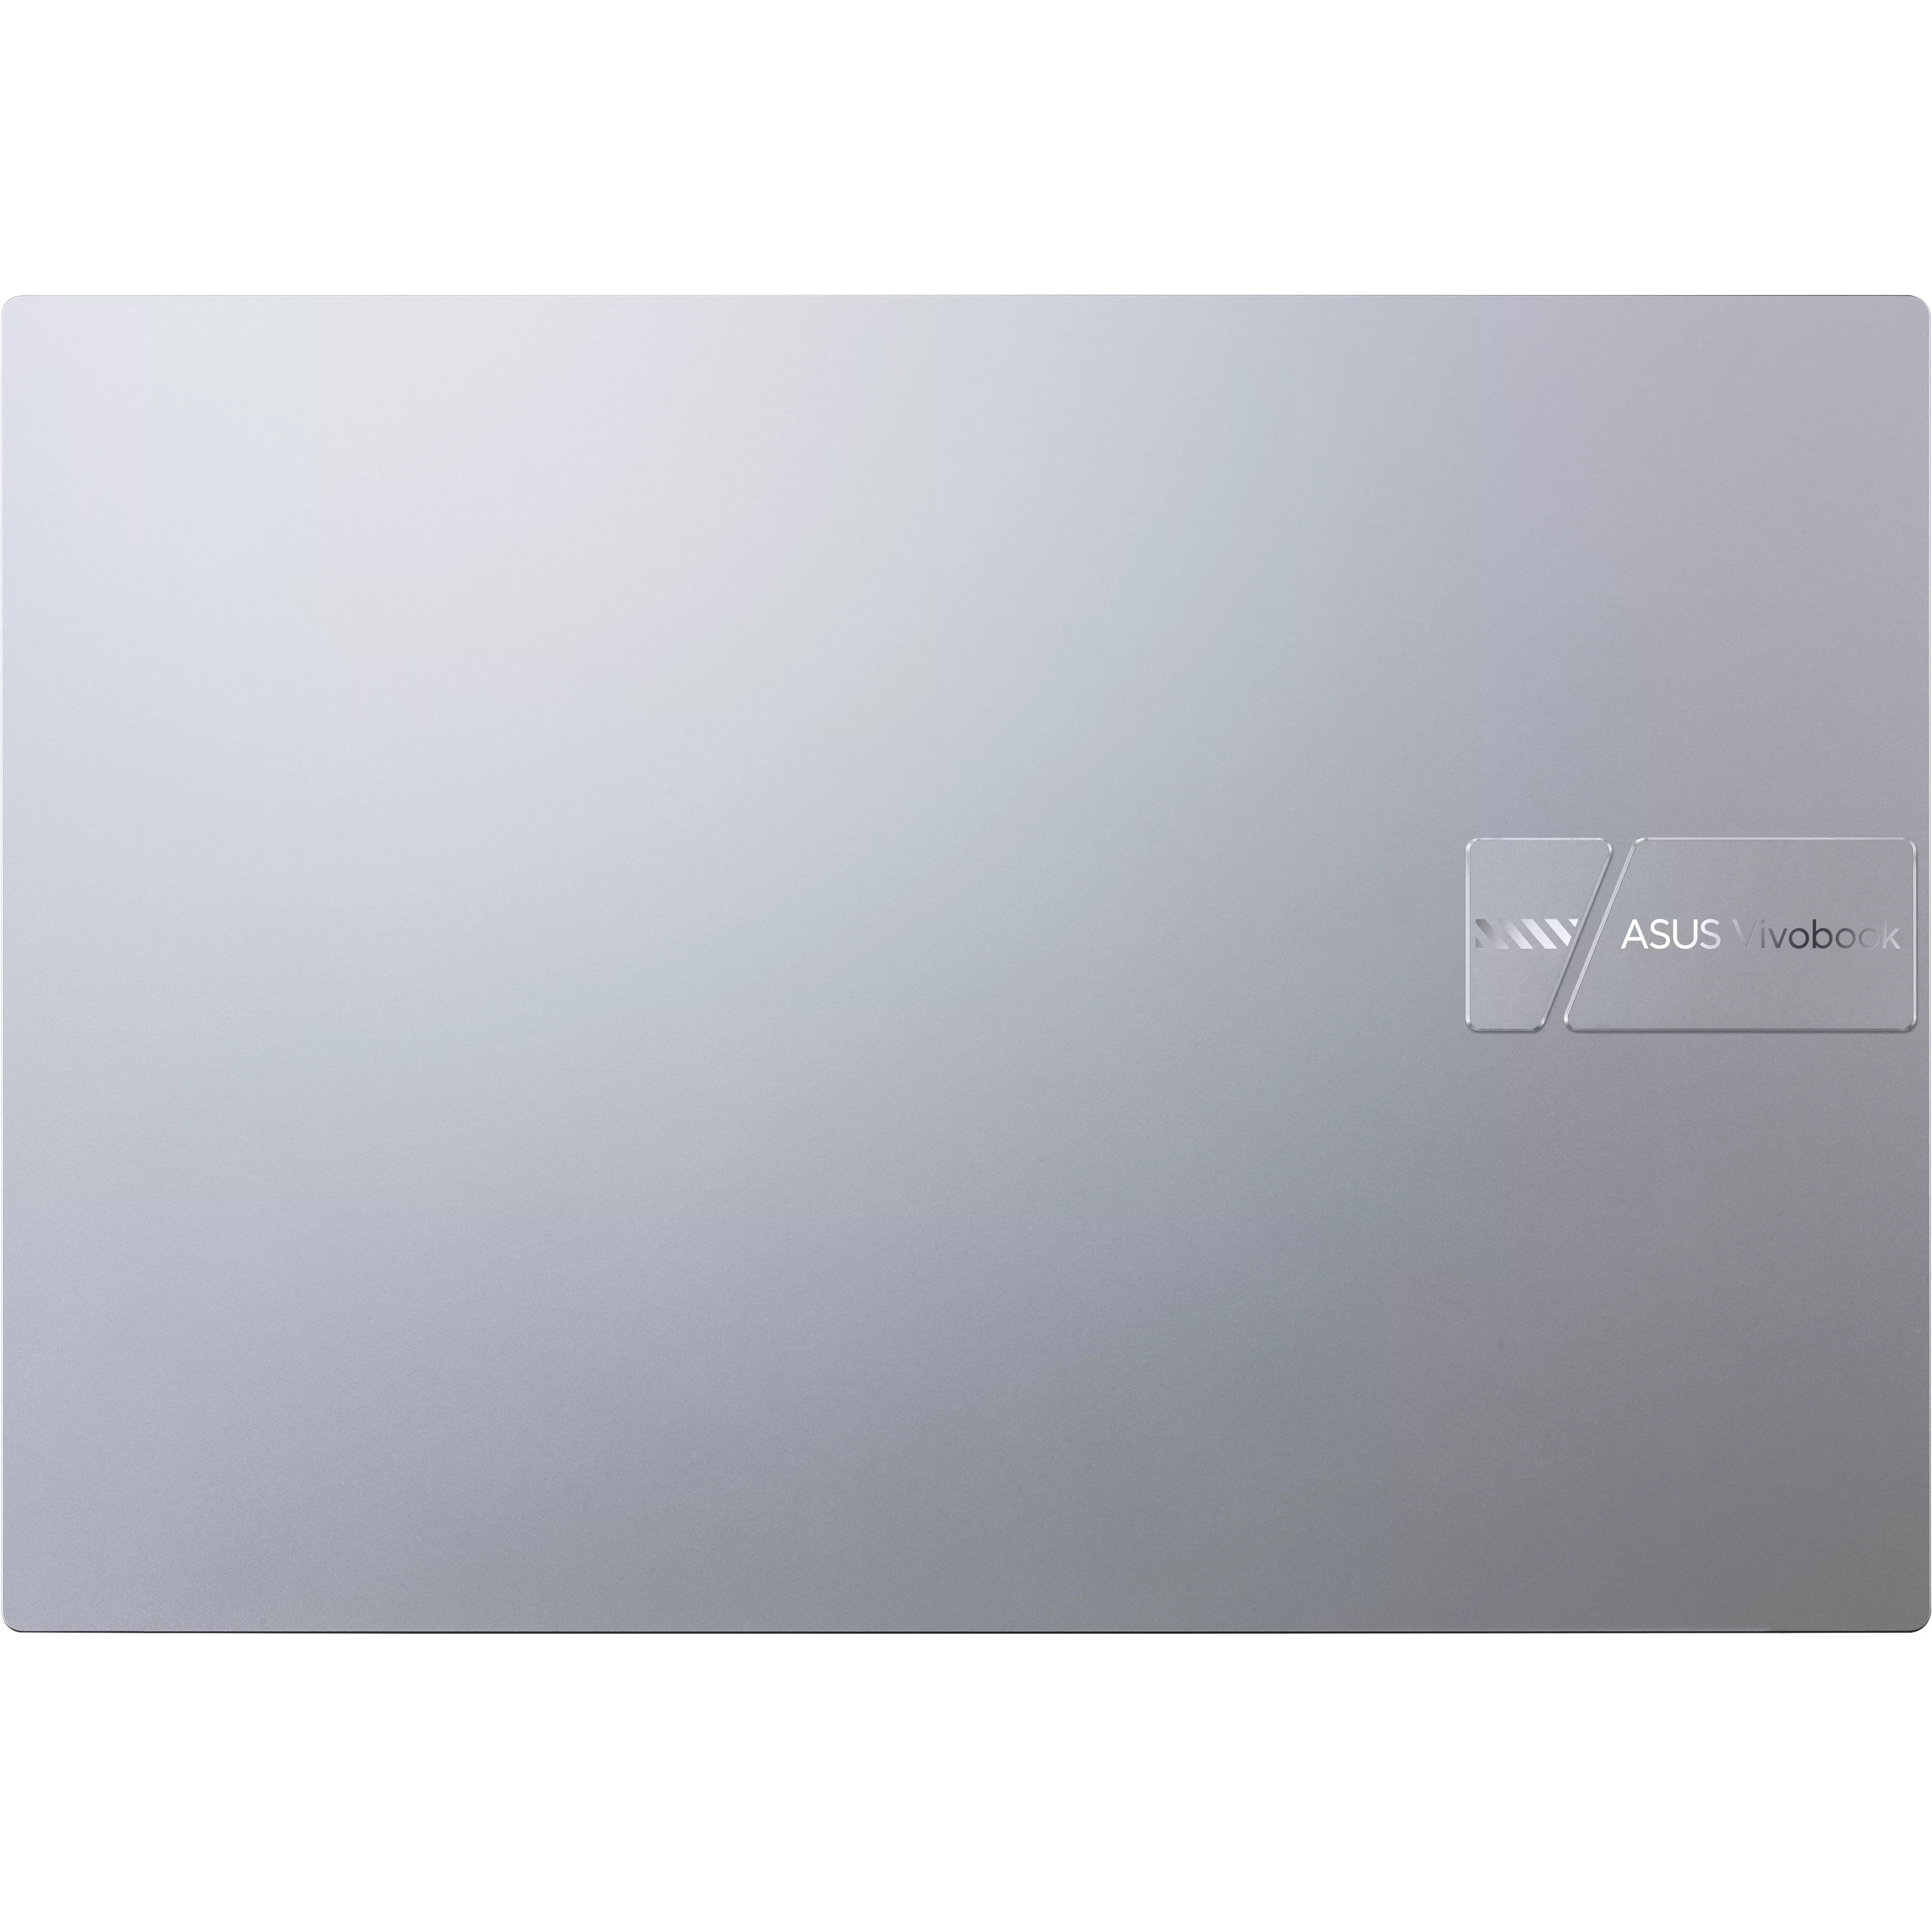 Vente ASUS VivoBook P1600ZA-MB408X ASUS au meilleur prix - visuel 6